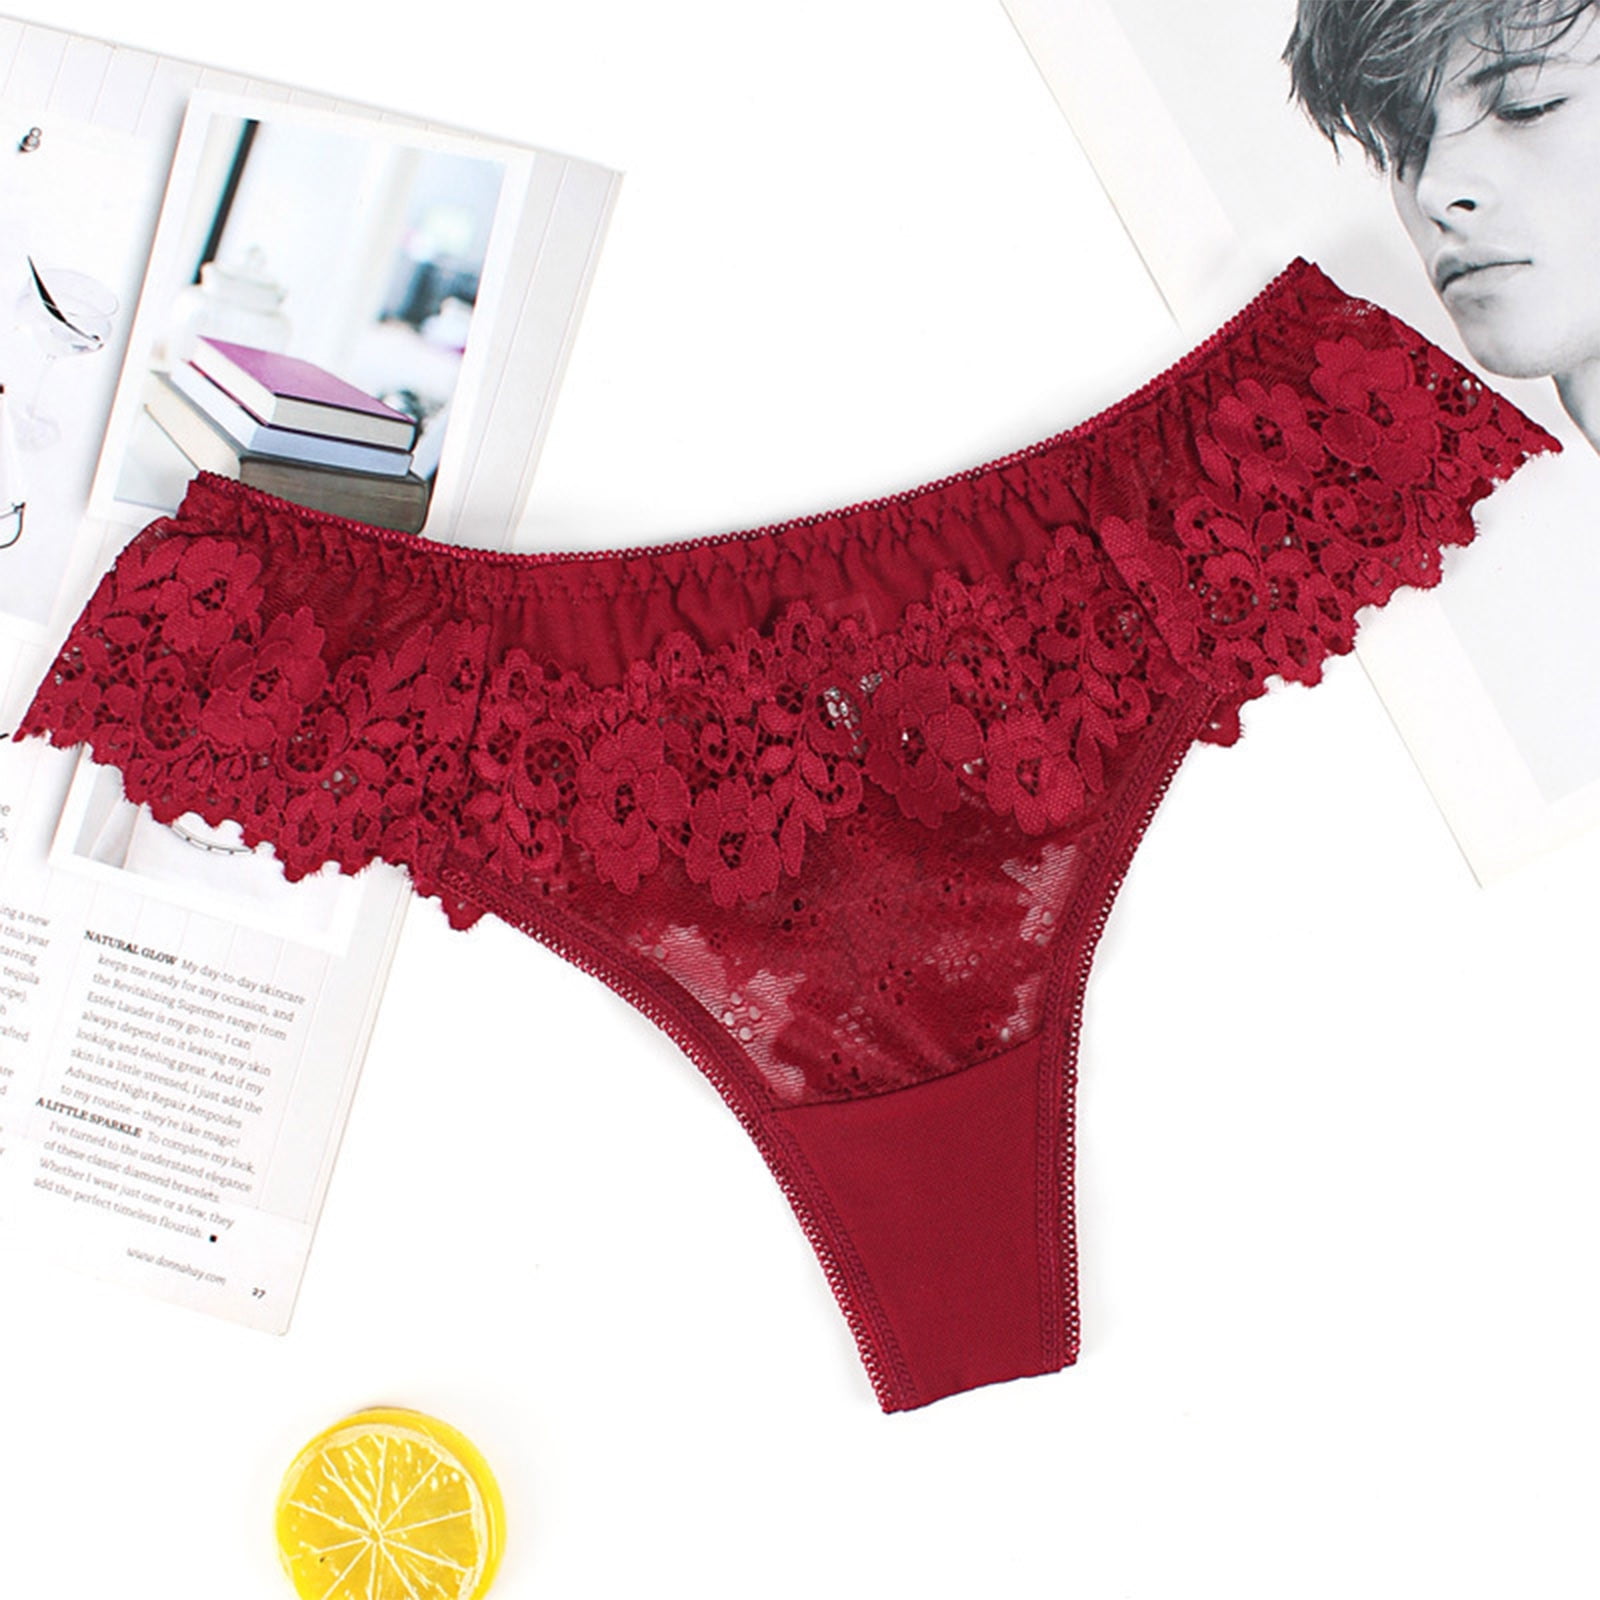 HUPOM Sexy Panties For Women Underwear Pants Activewear Belt Seamless  Waistband Red XL